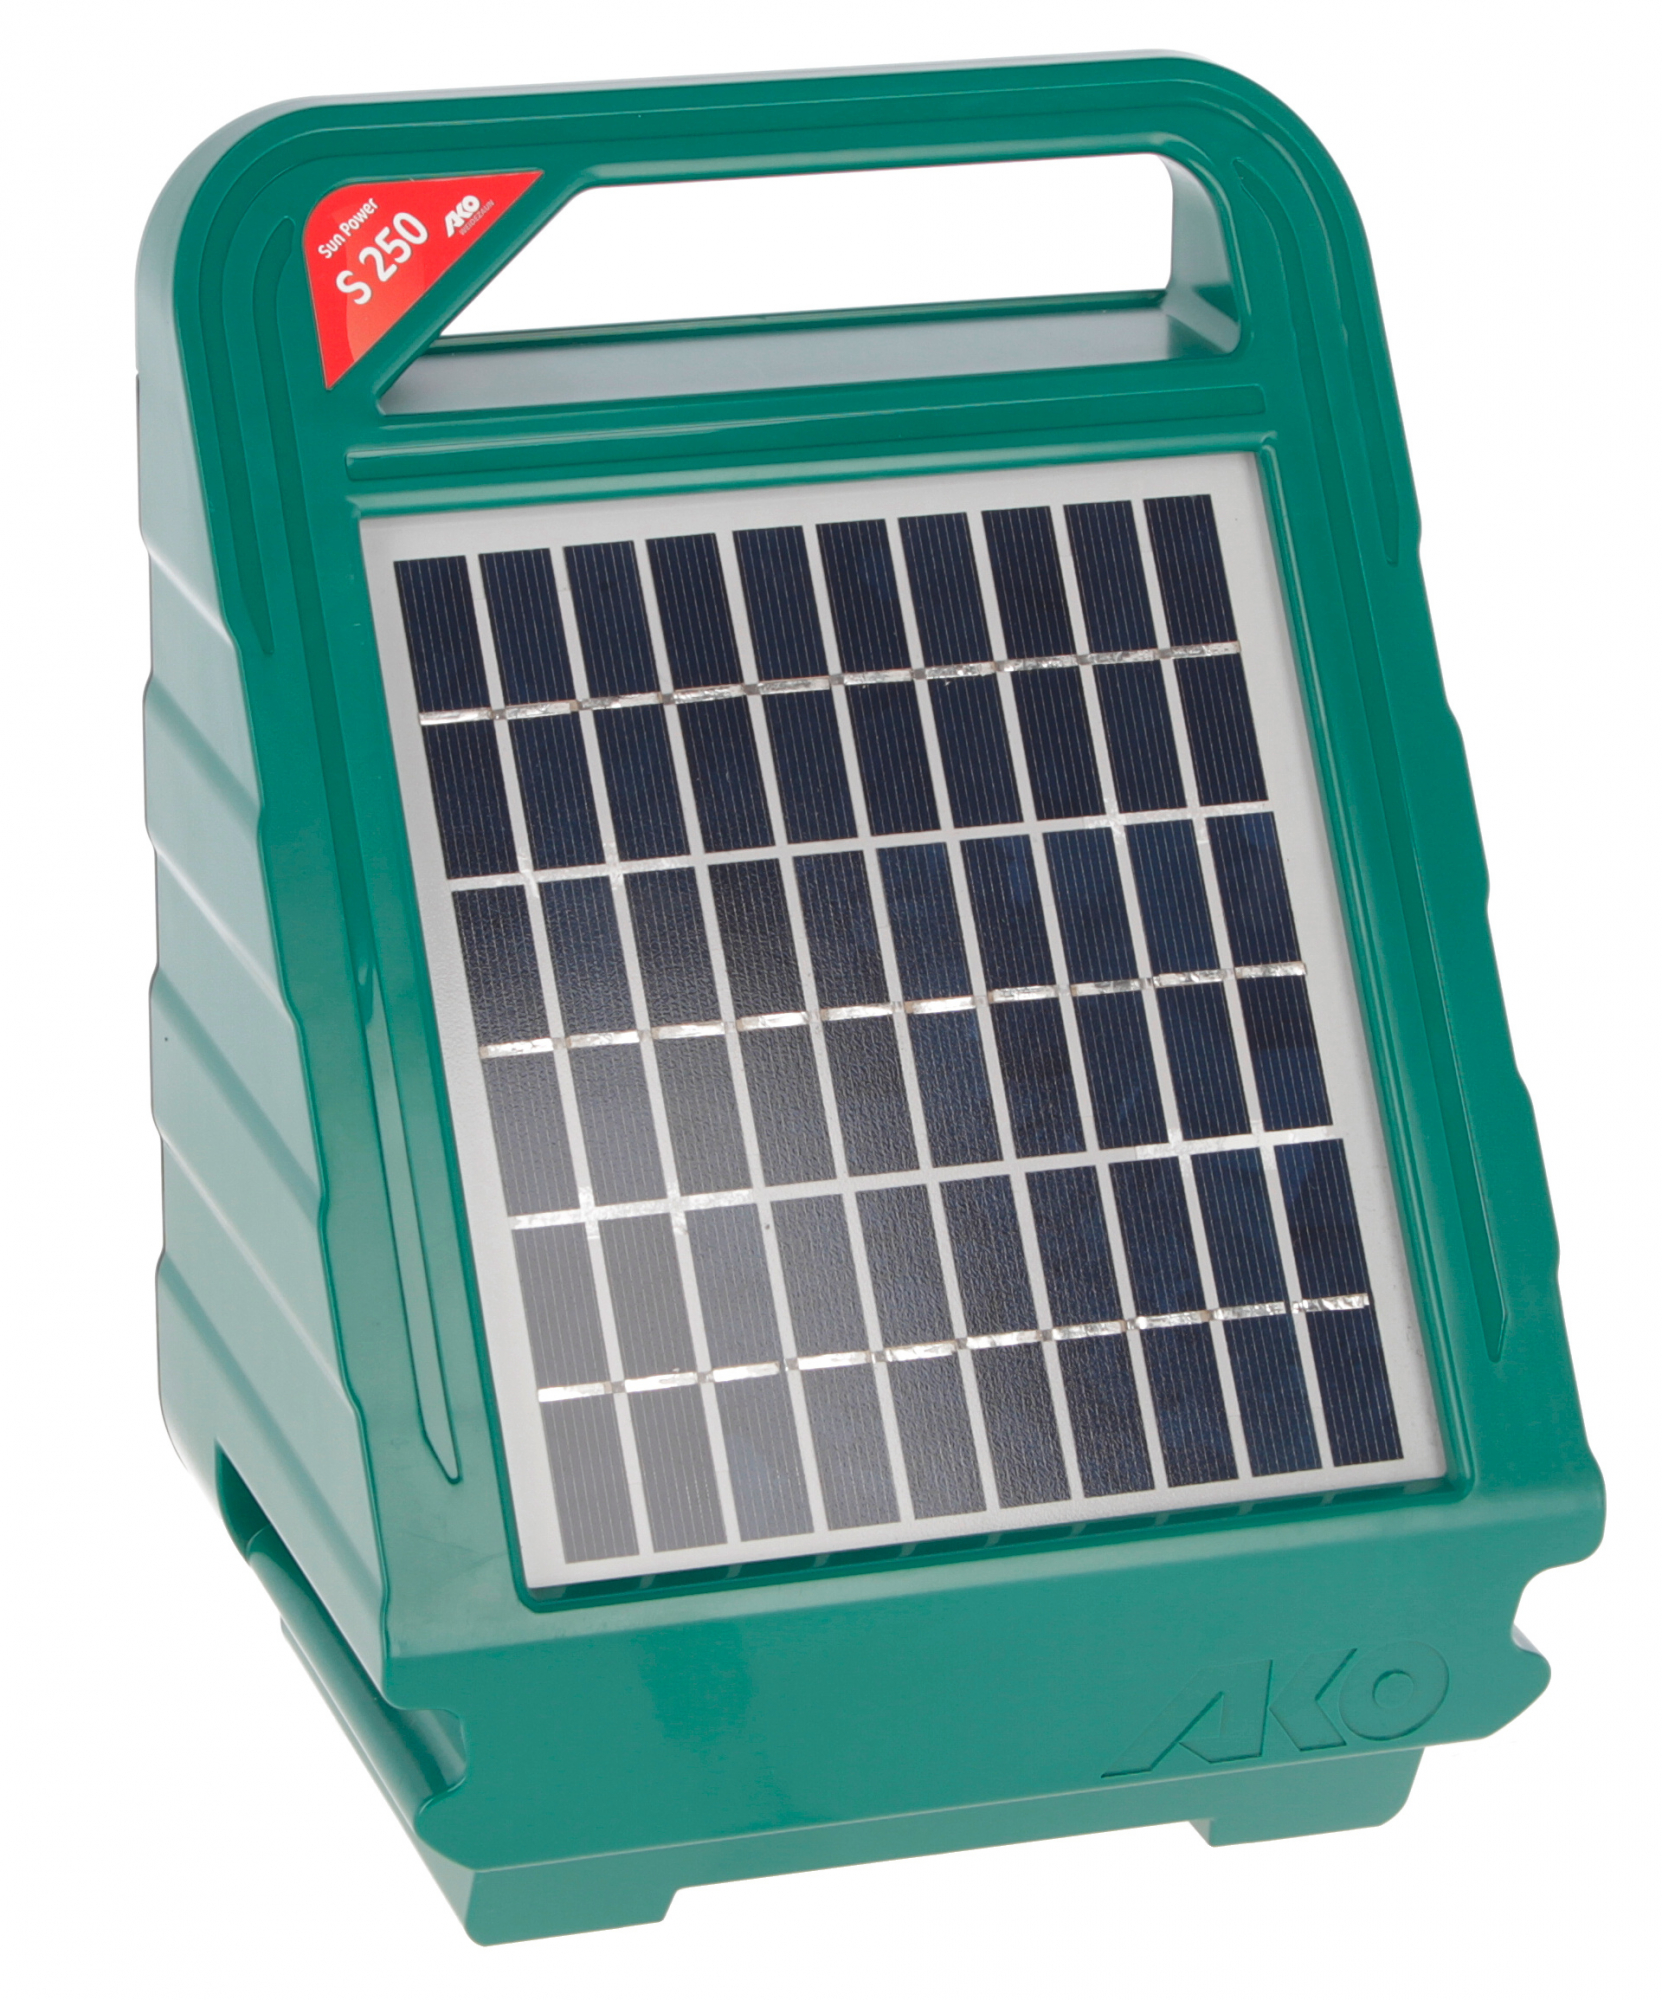 Electrificador solar AKO Sun Power S 250